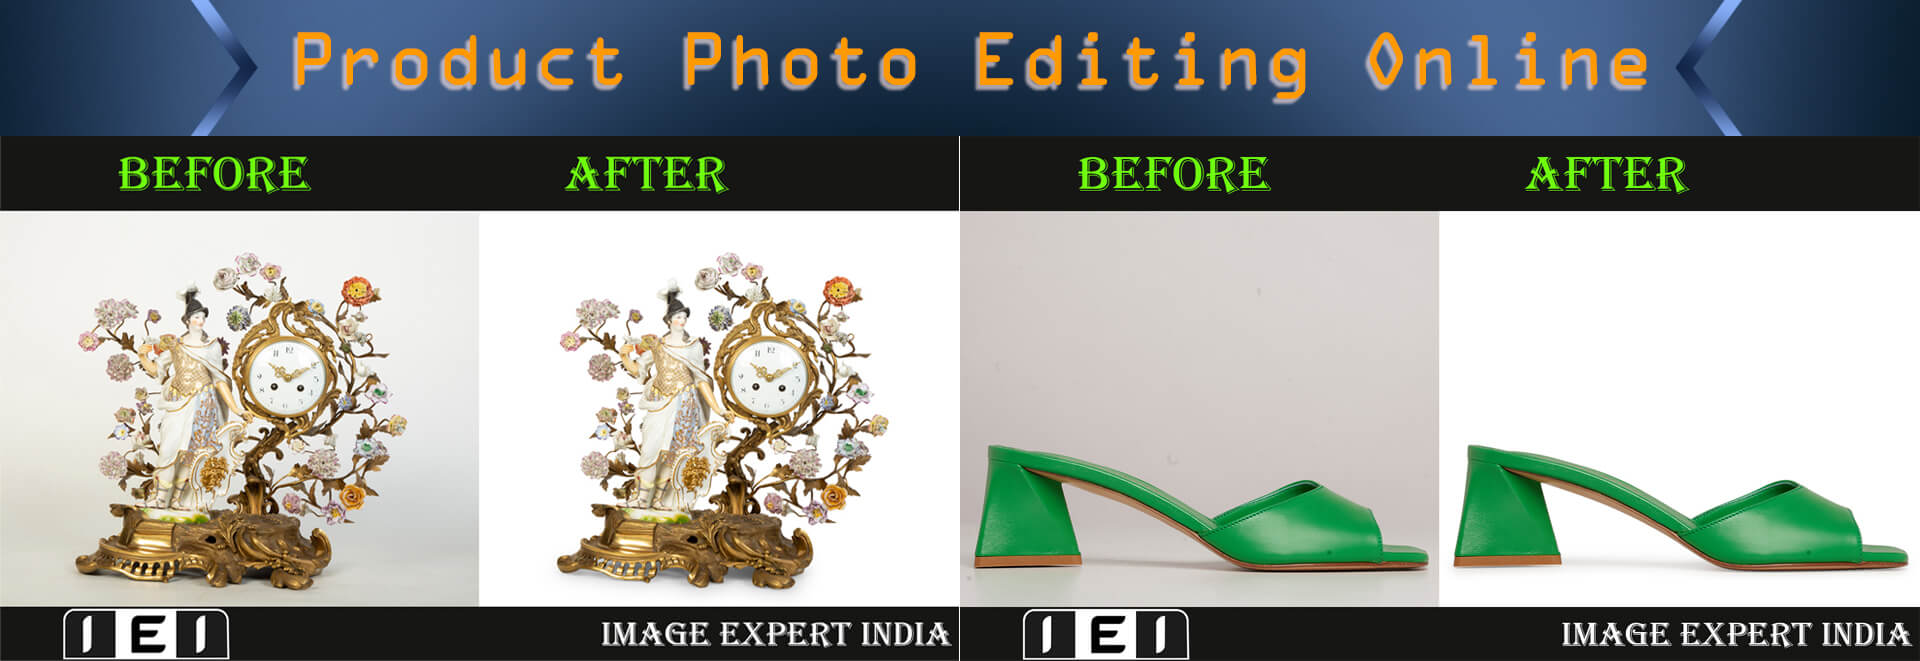 Ecommerce Product Image Editing